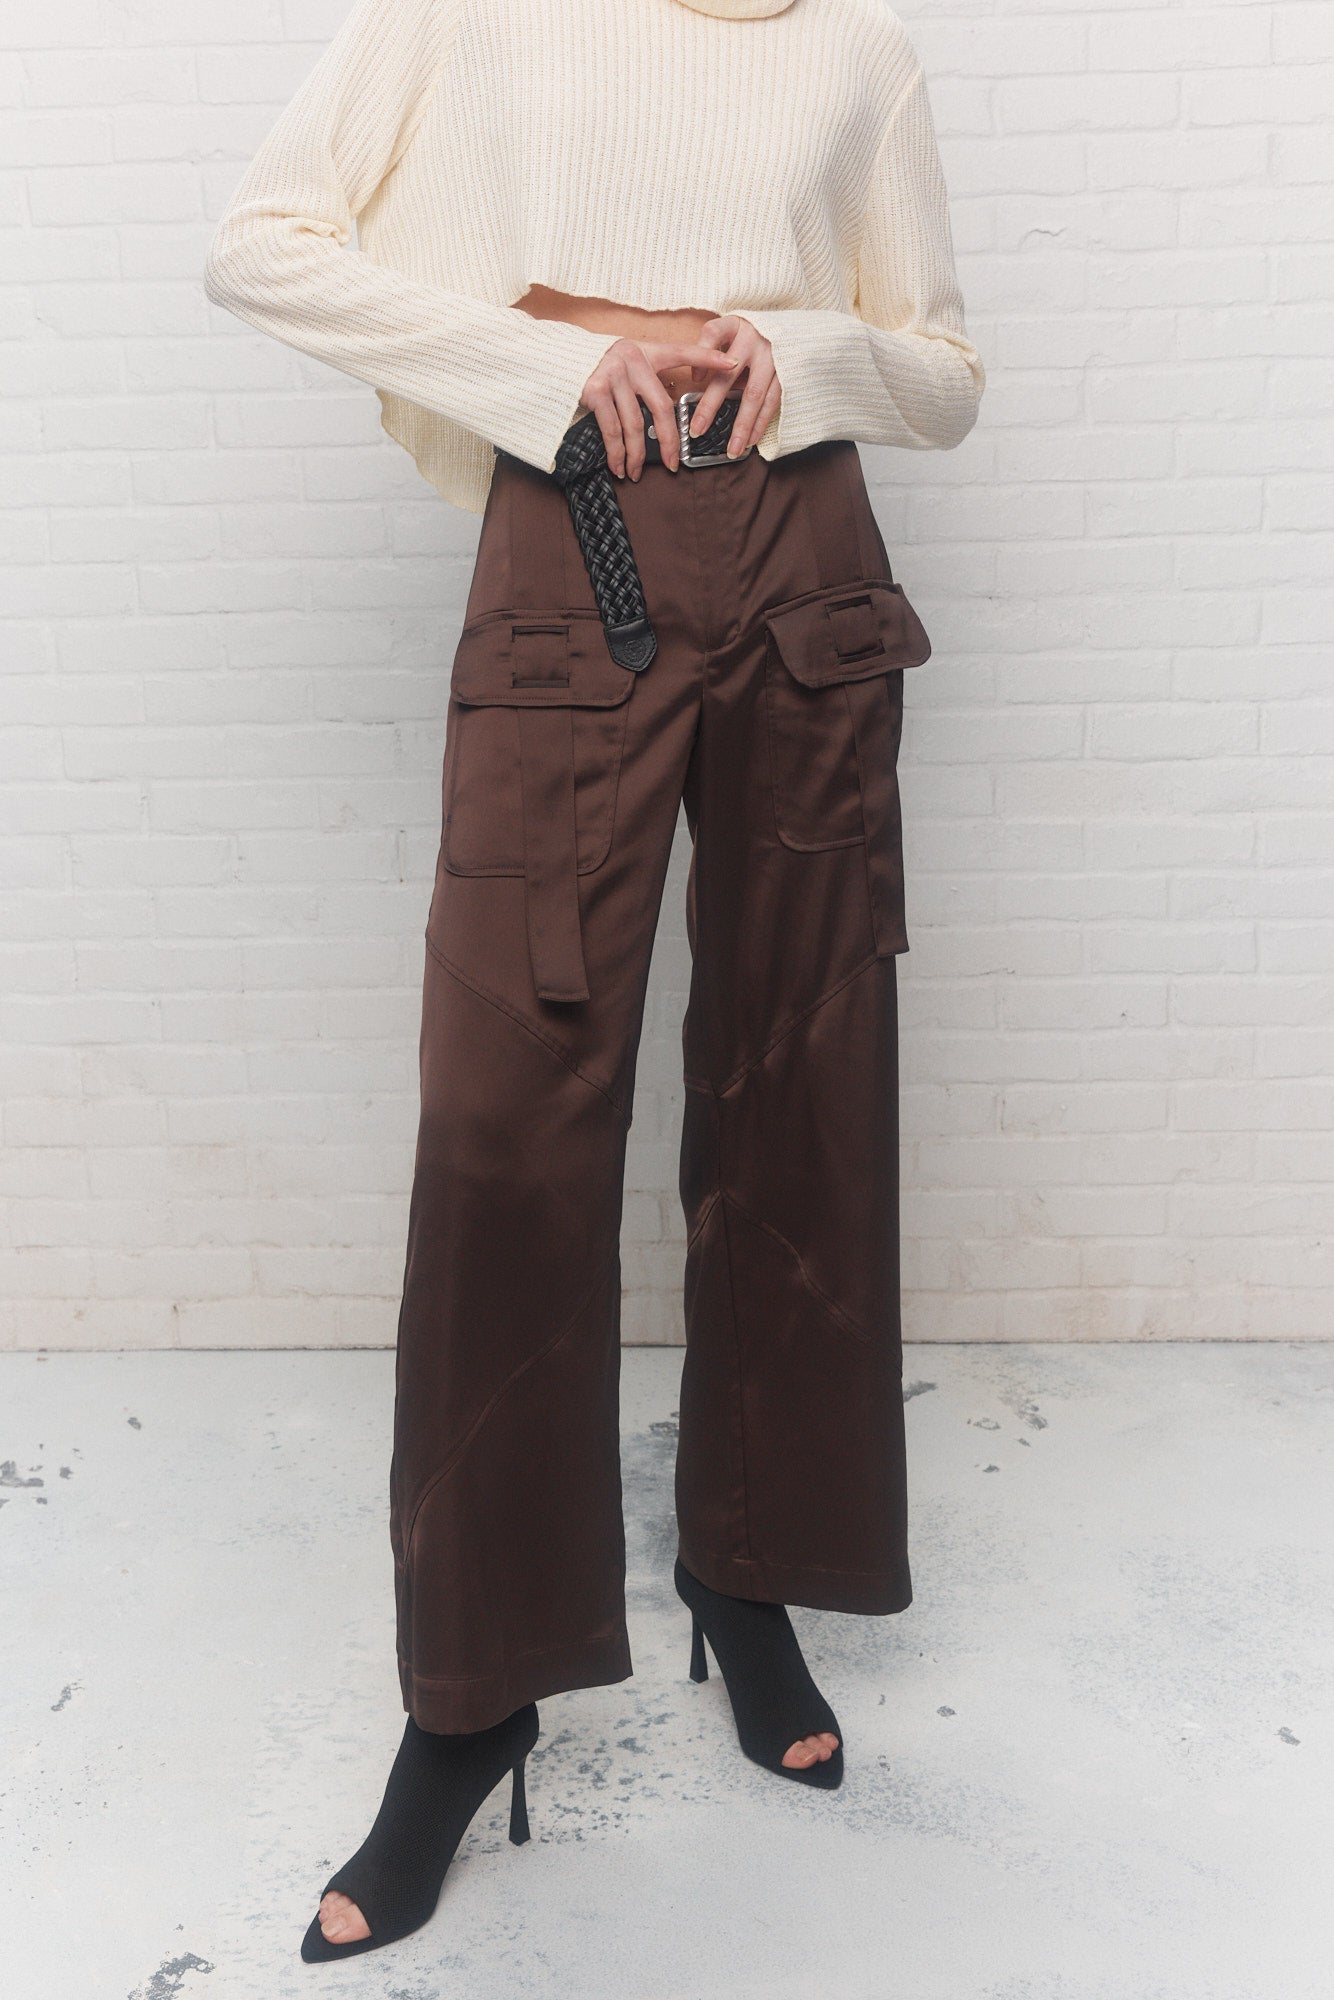 Pantalon marron foncé poches au devant | Nomo JOELLE Collection